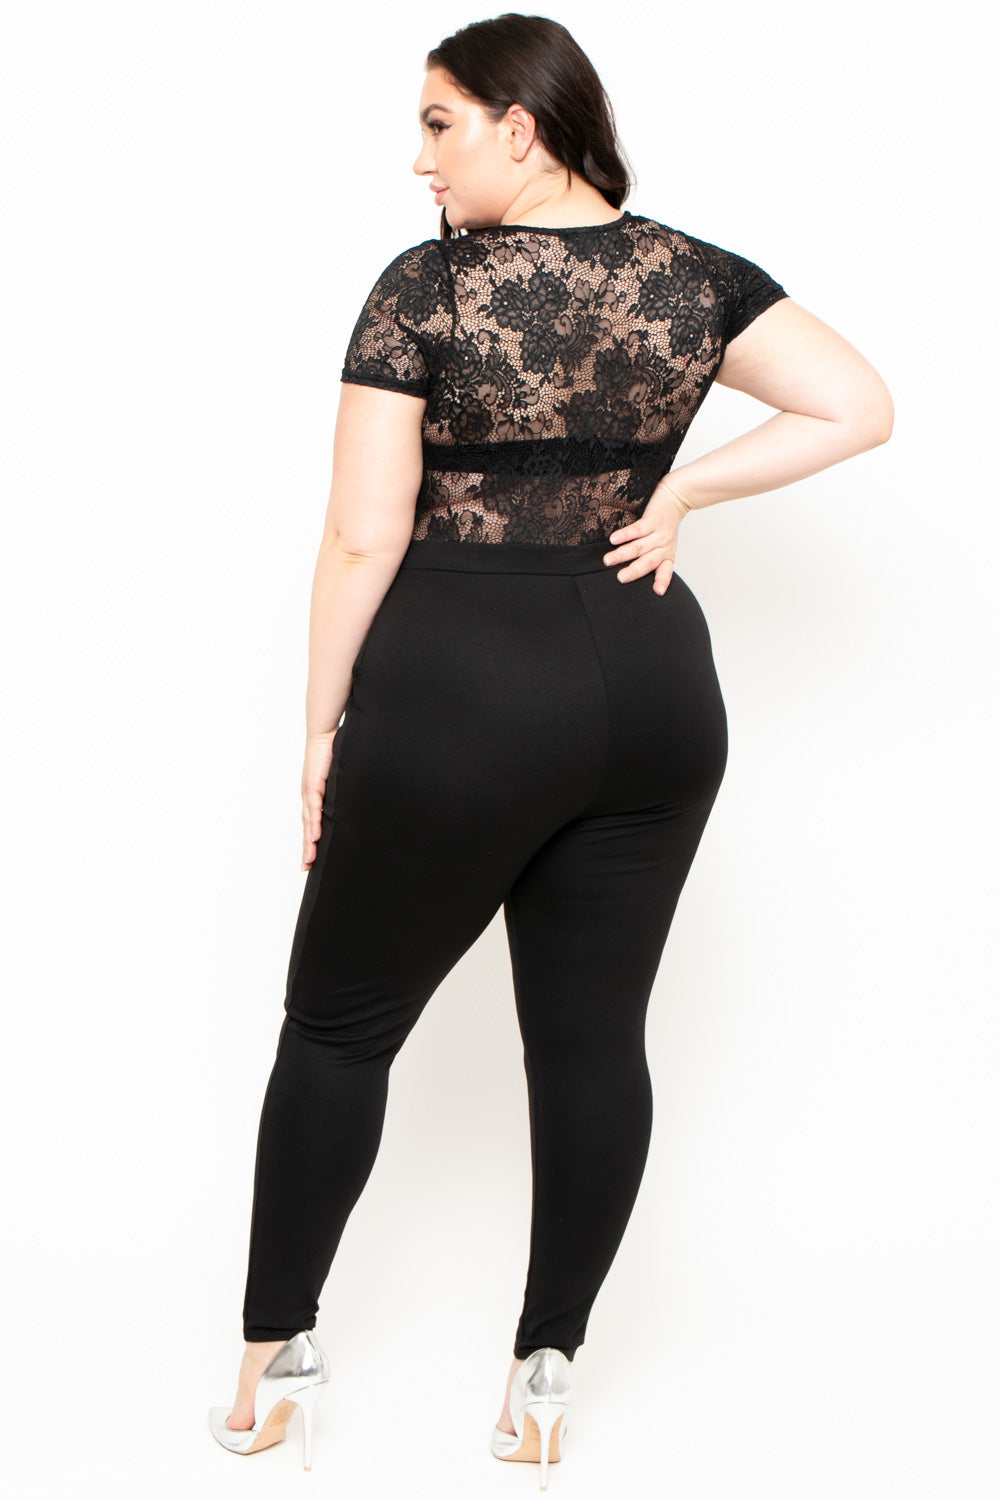 Plus Size Lace Top Jumpsuit - Black - Curvy Sense